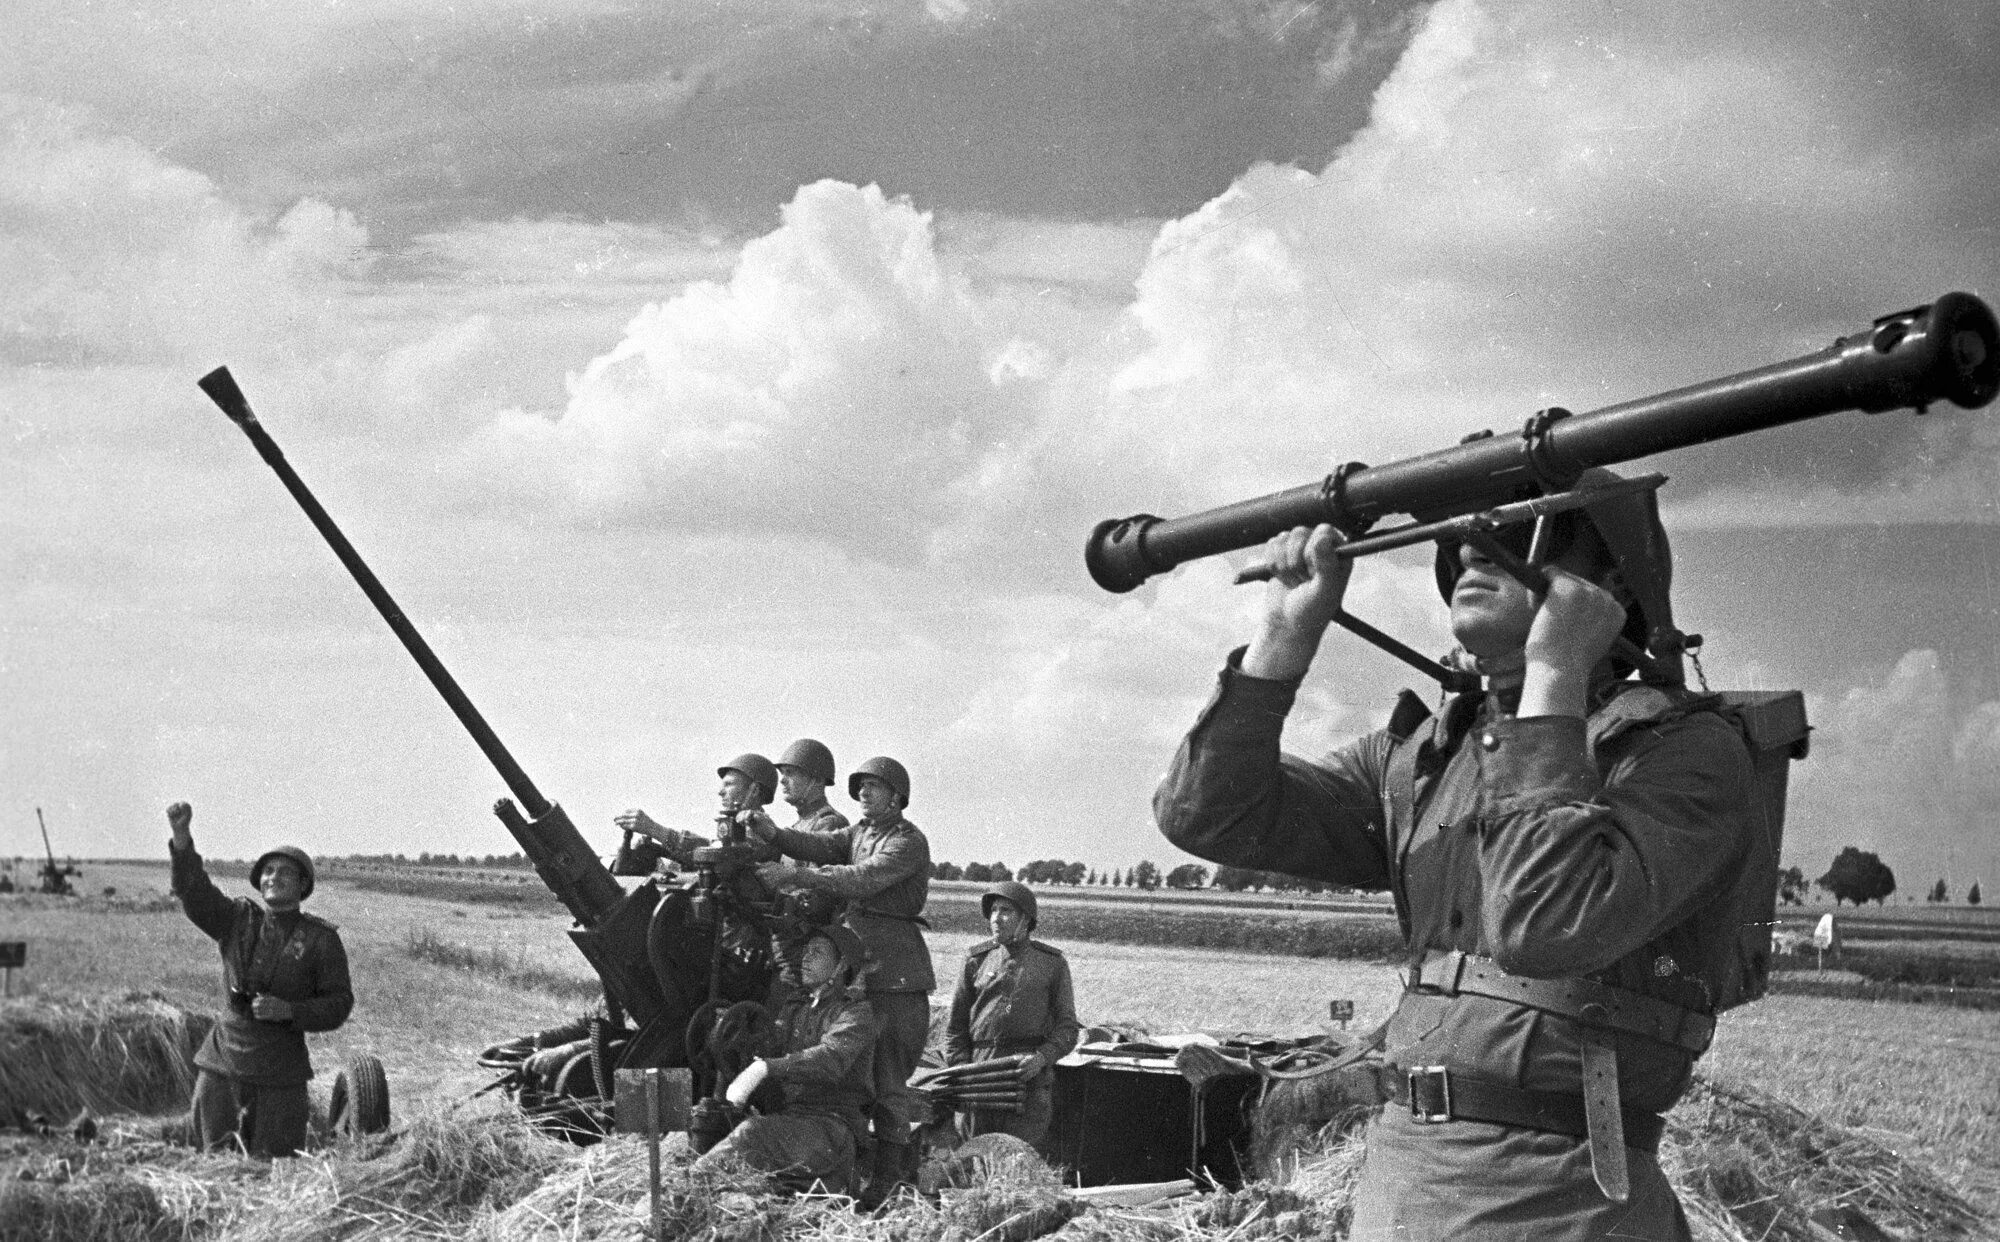 Фронт великой отечественной войны 41. Зенитная пушка 37 мм ВОВ. Зенитчики РККА В 1941 году. 37-Мм зенитная пушка в годы ВОВ. Зенитная батарея 1941-1945.